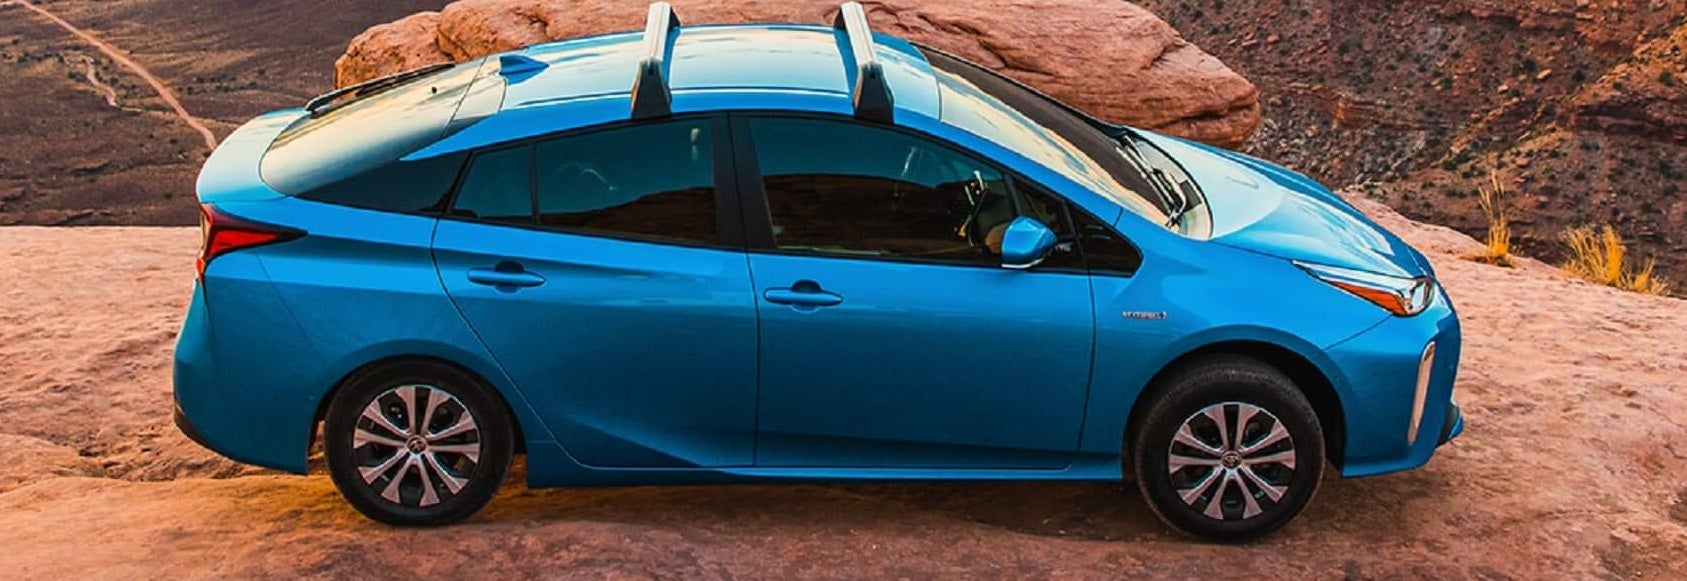 Toyota Prius Reviews